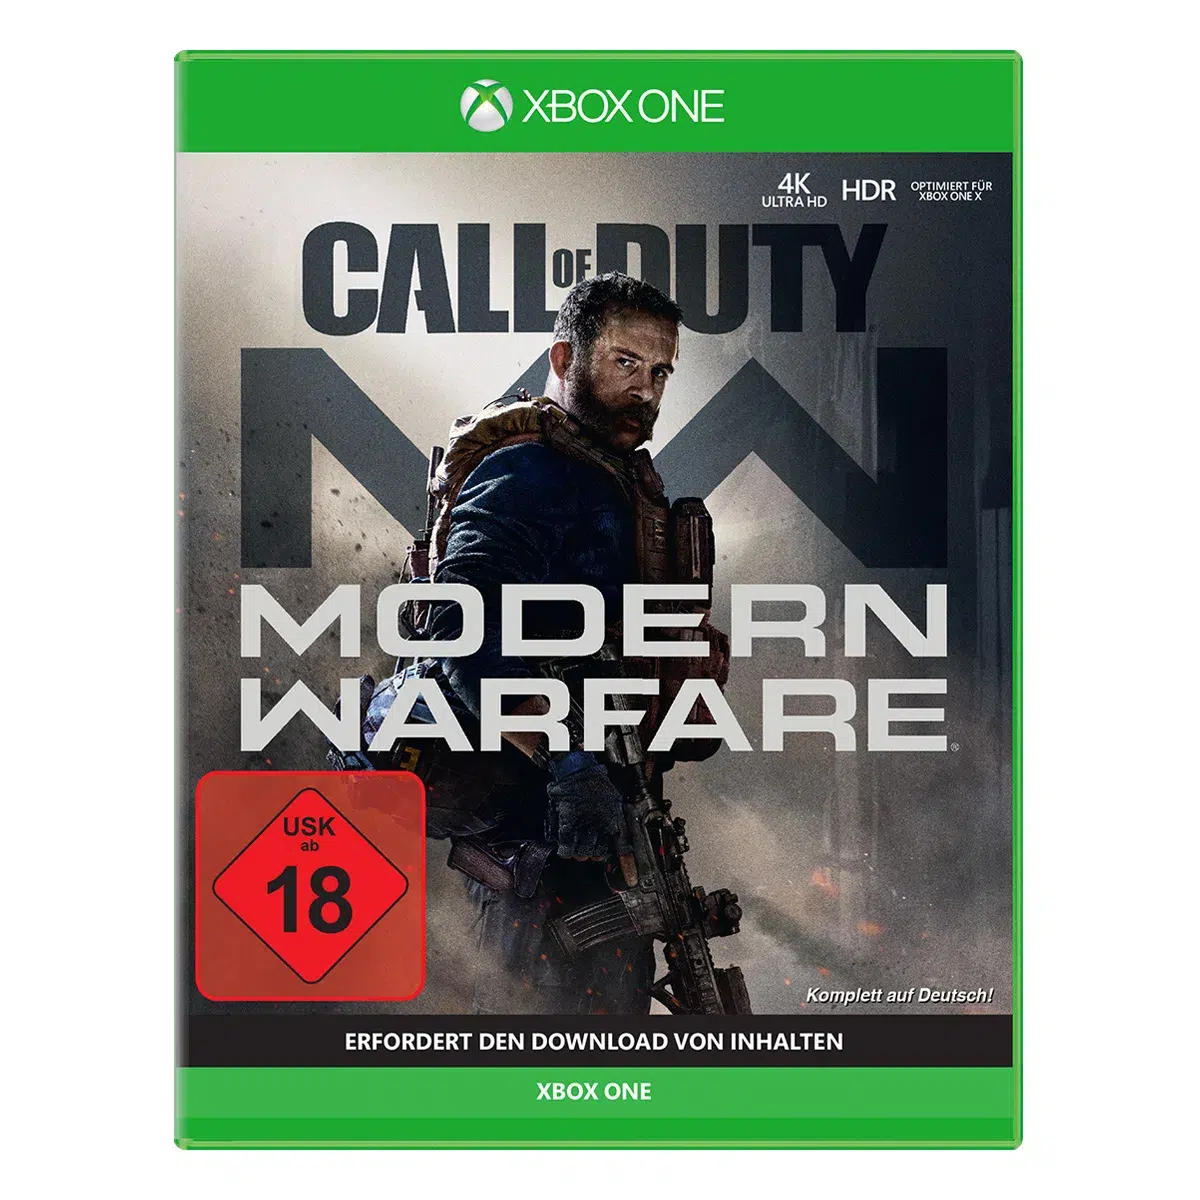 Call of Duty: Modern Warfare - XONE